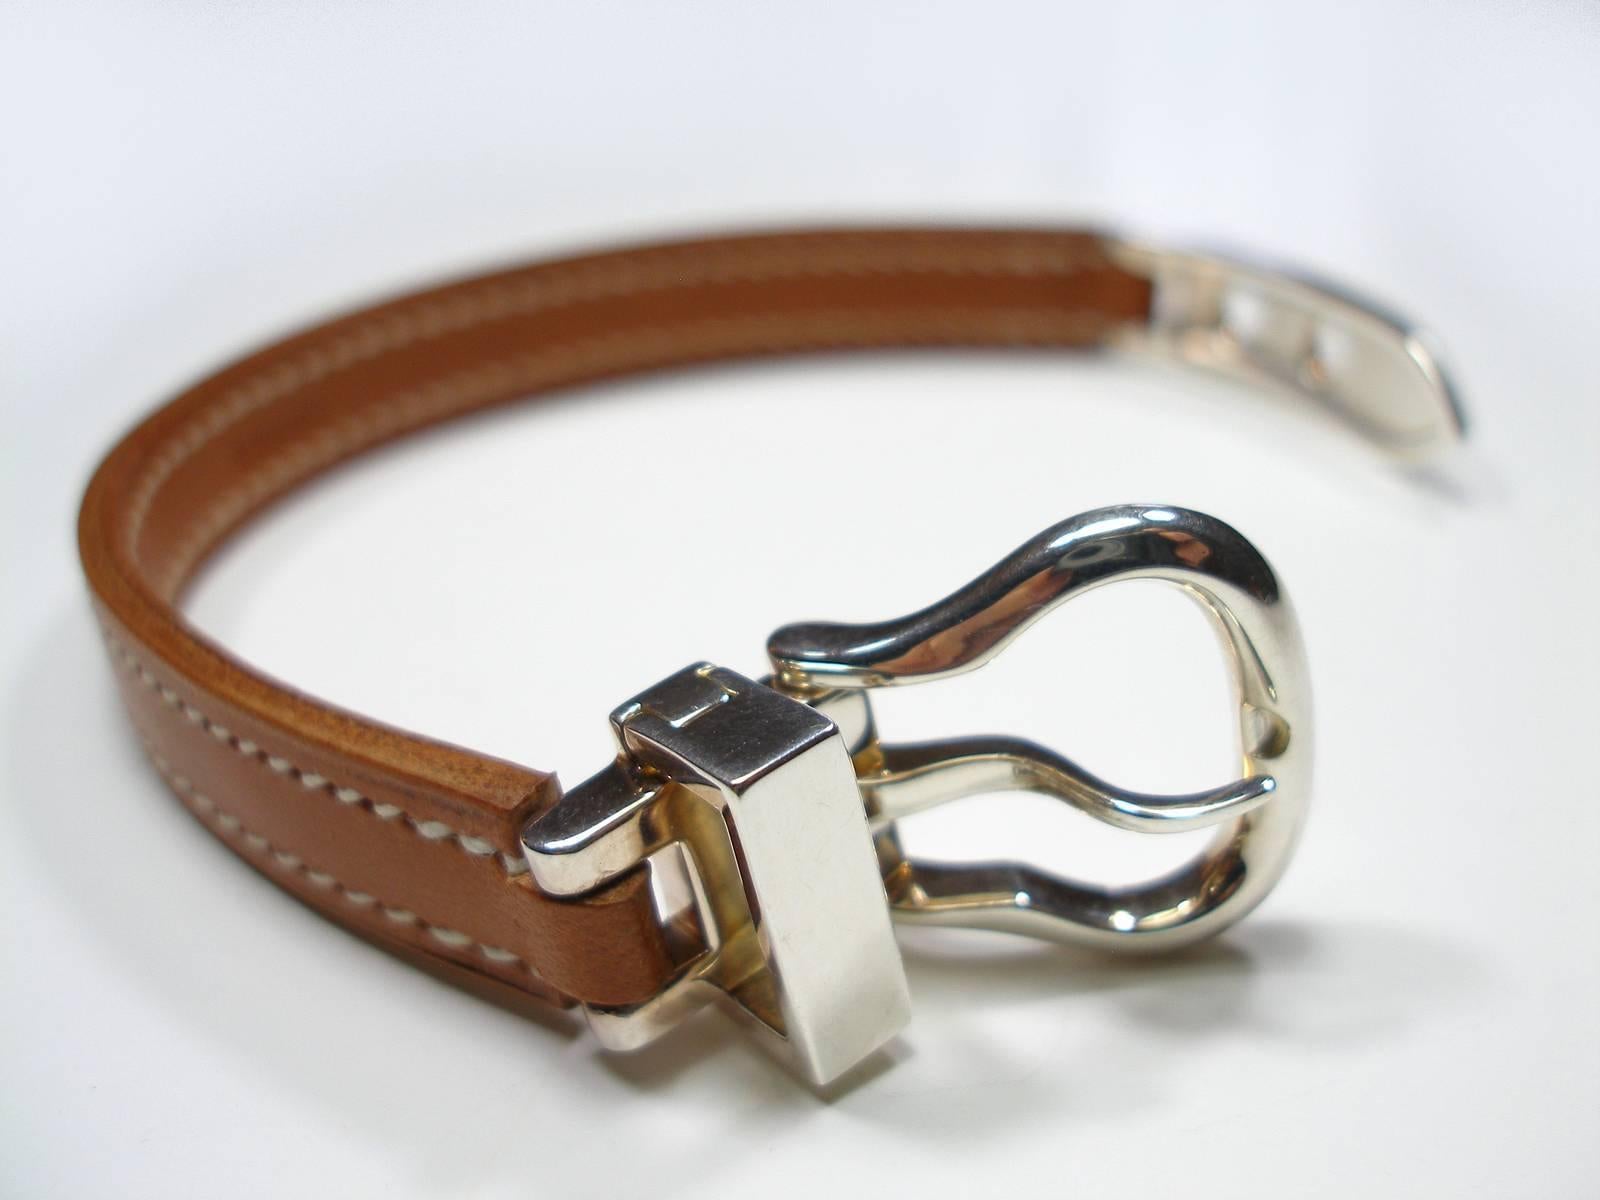 Circa's 2005 Hermès Bracelet Boucle Sellier Silver 925 &Barenia Leather / L Size 1